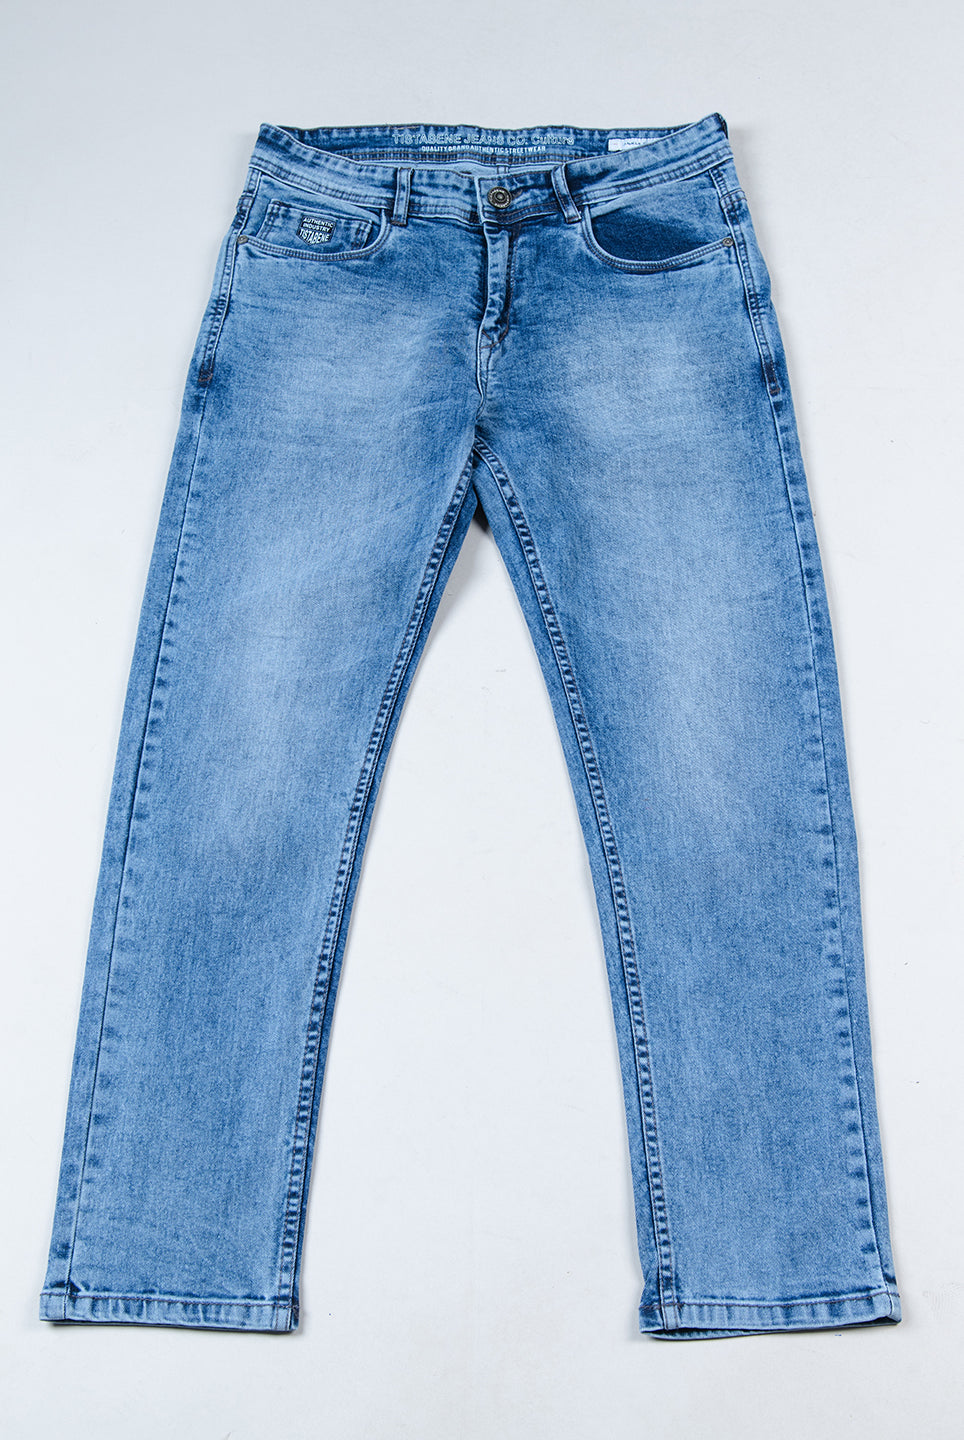 jeans pant